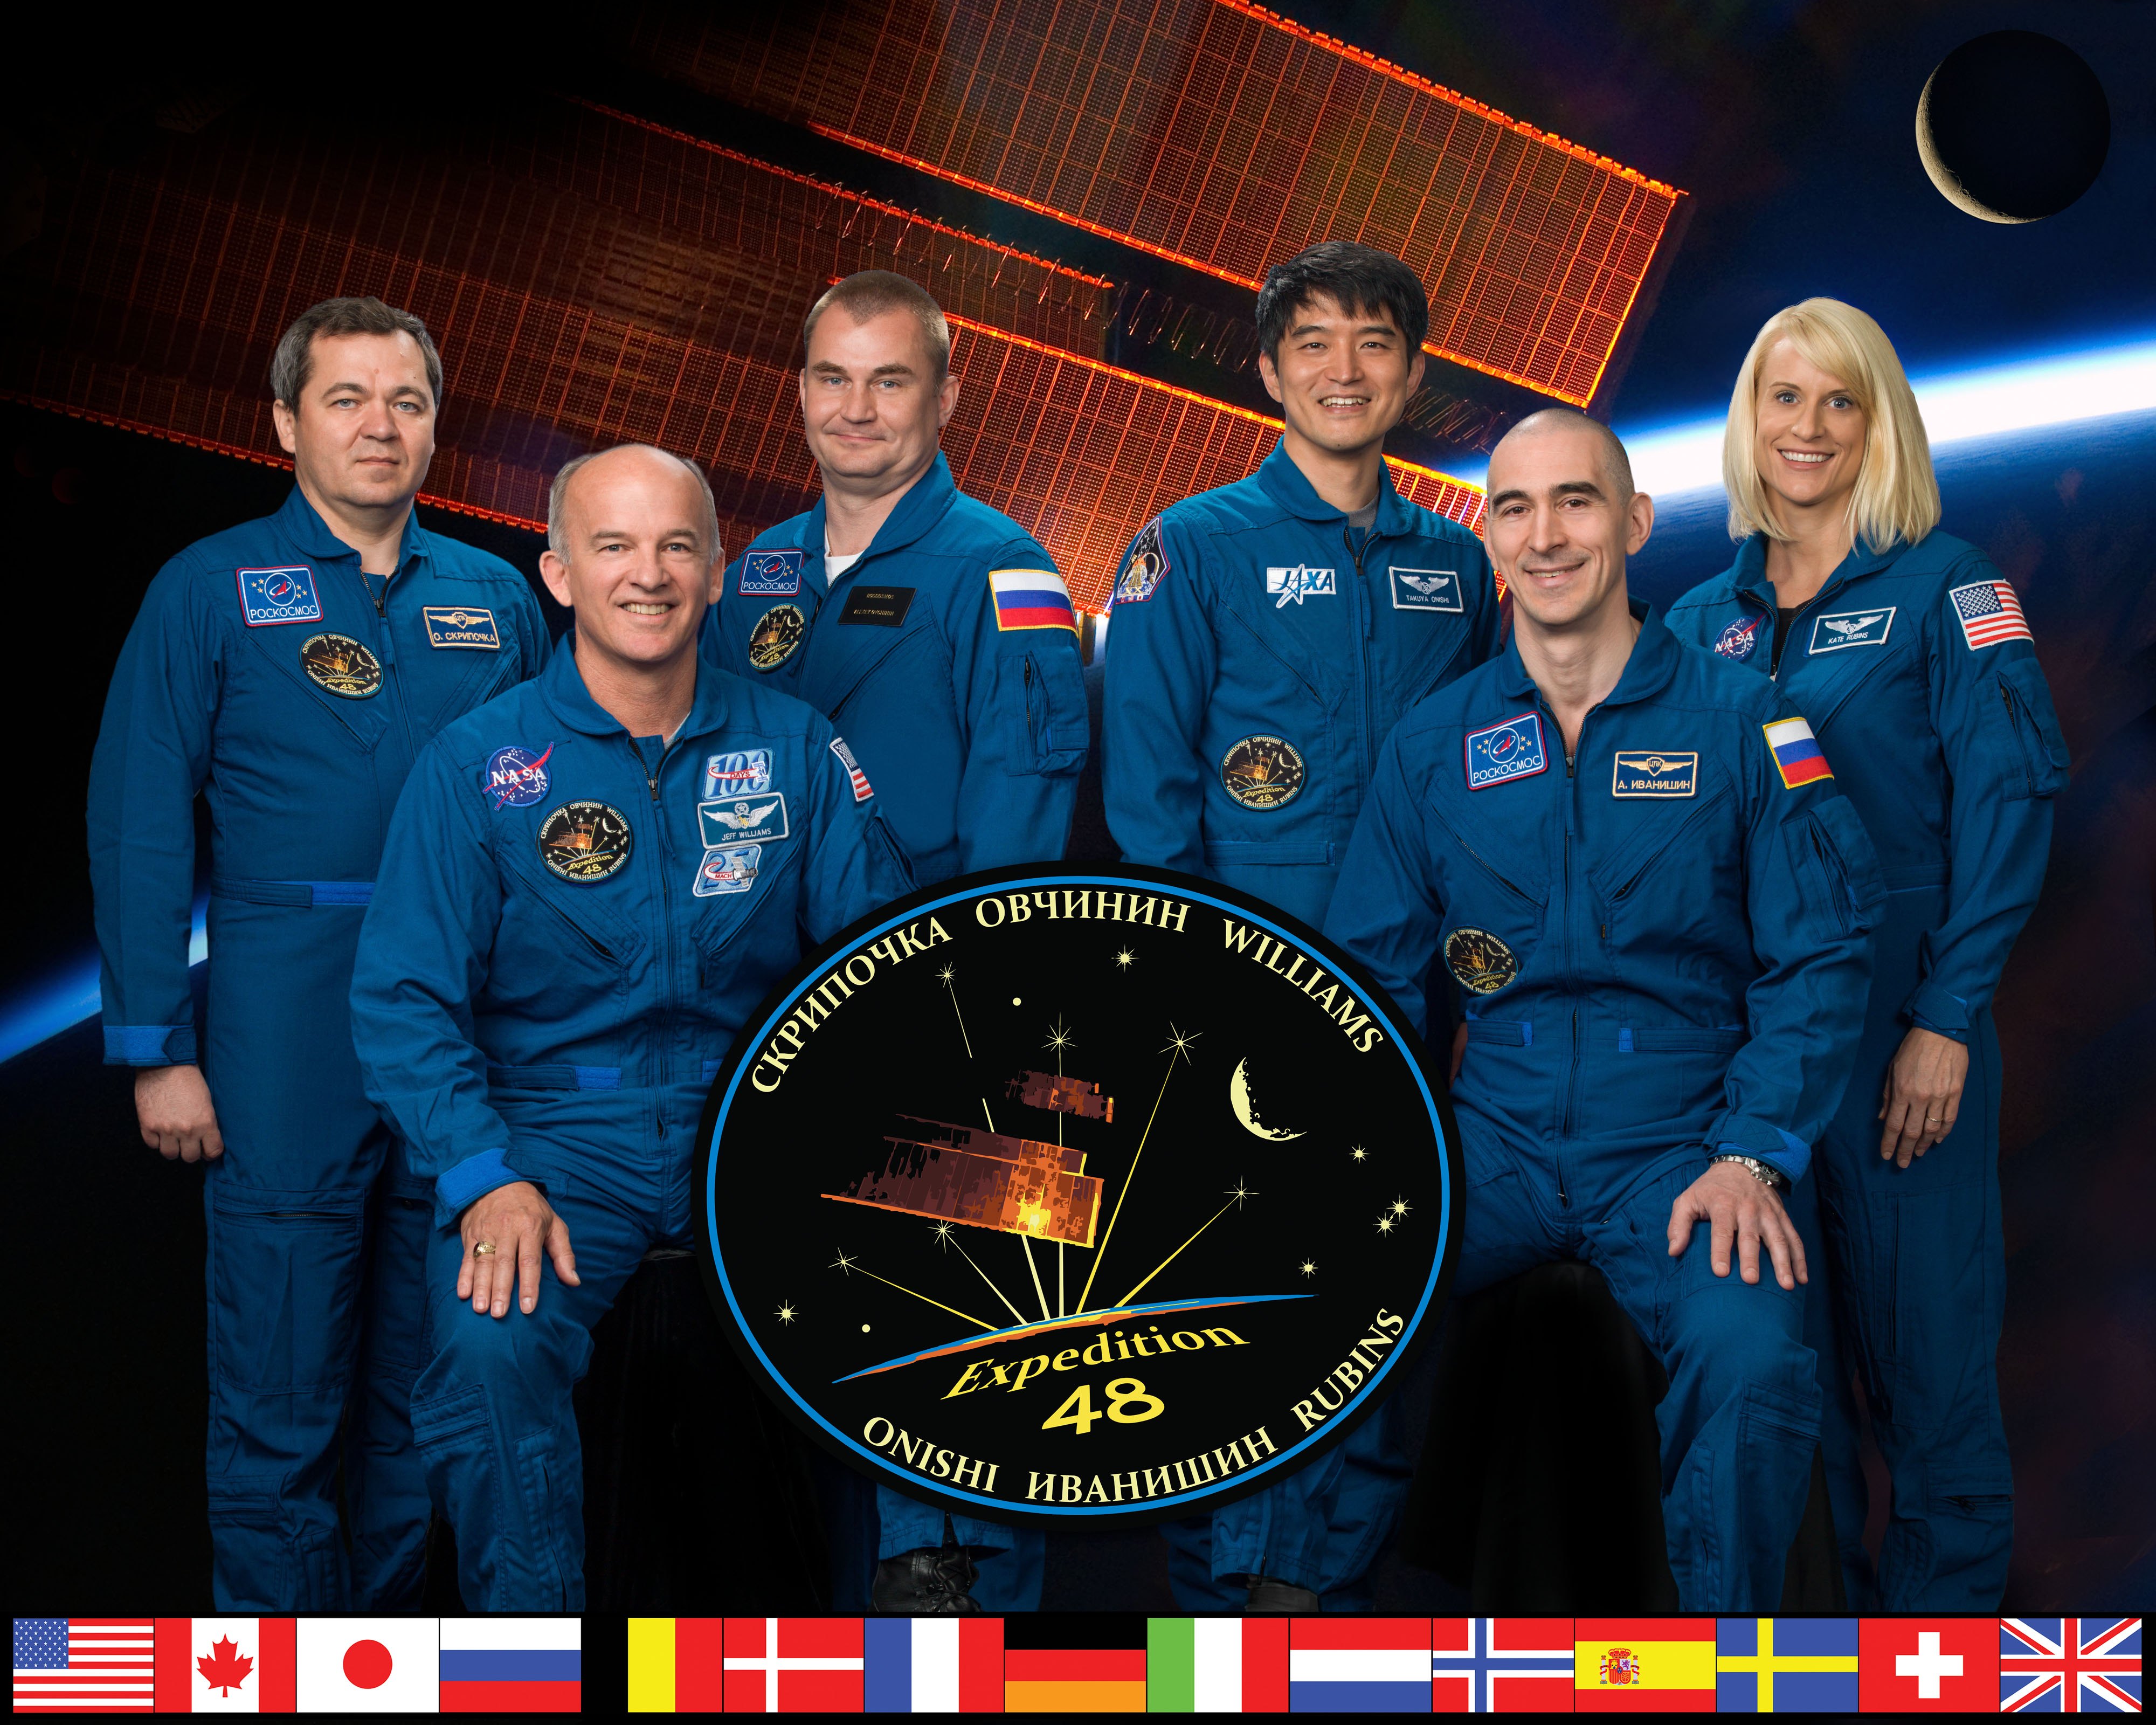 Expedition 48 crew portrait